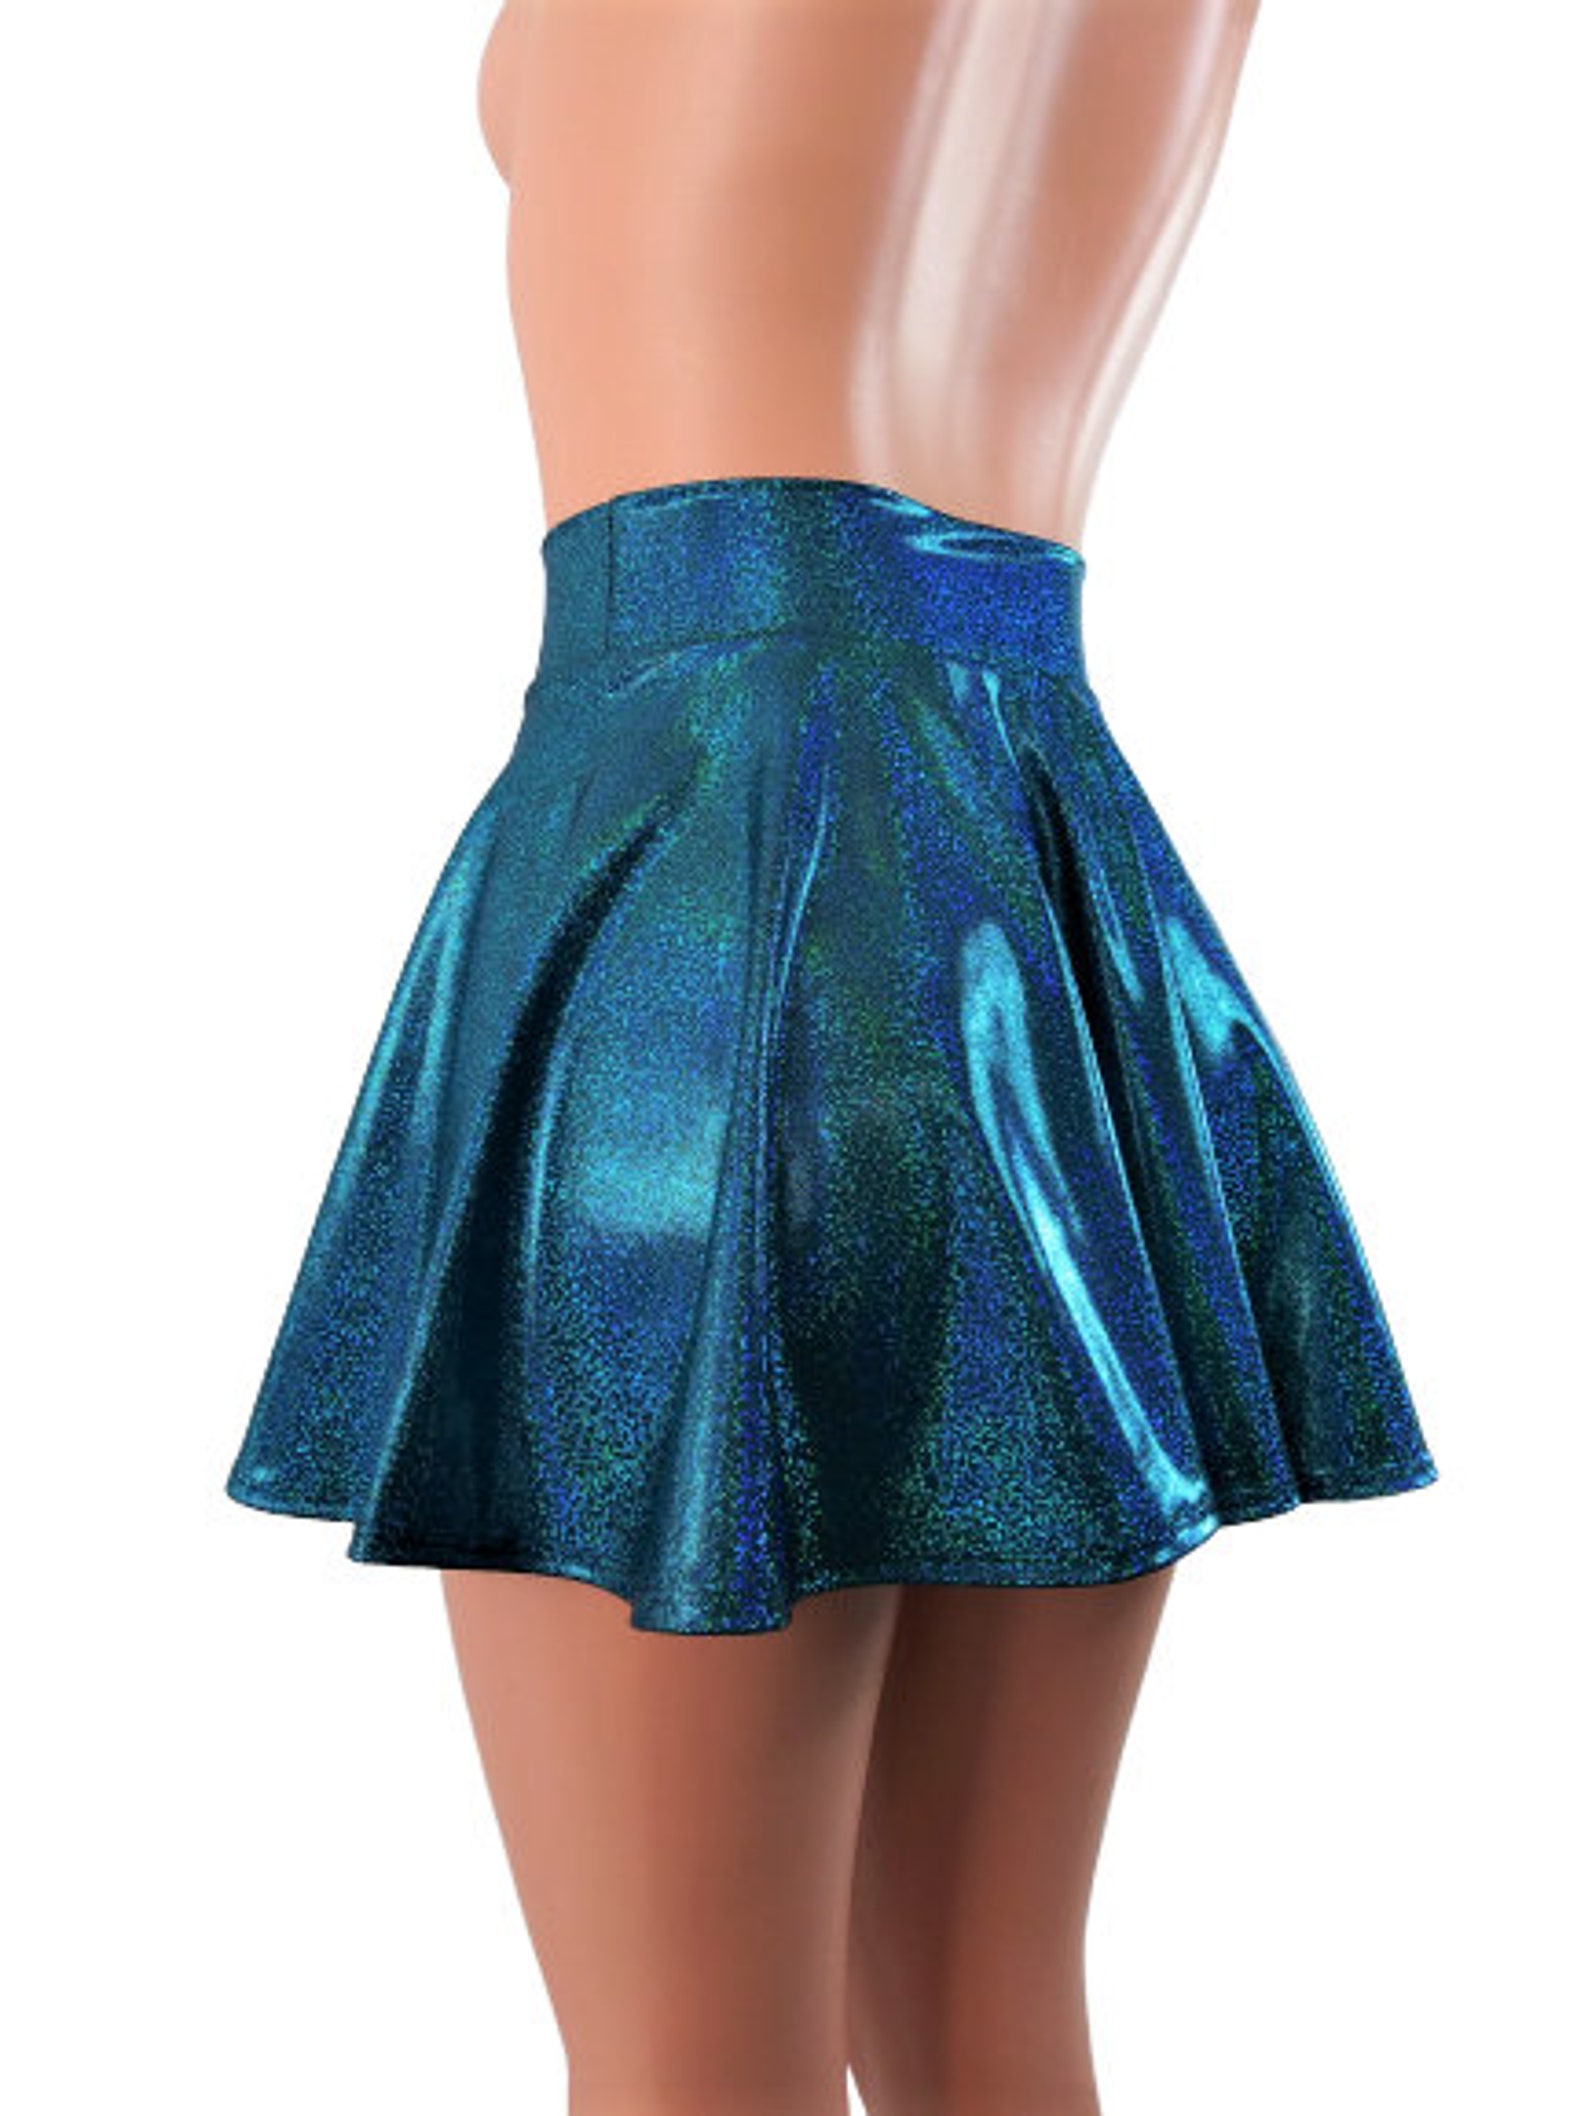 Turquoise Skater Skirt Circle Skirt Soft Sparkling Fabric - Etsy